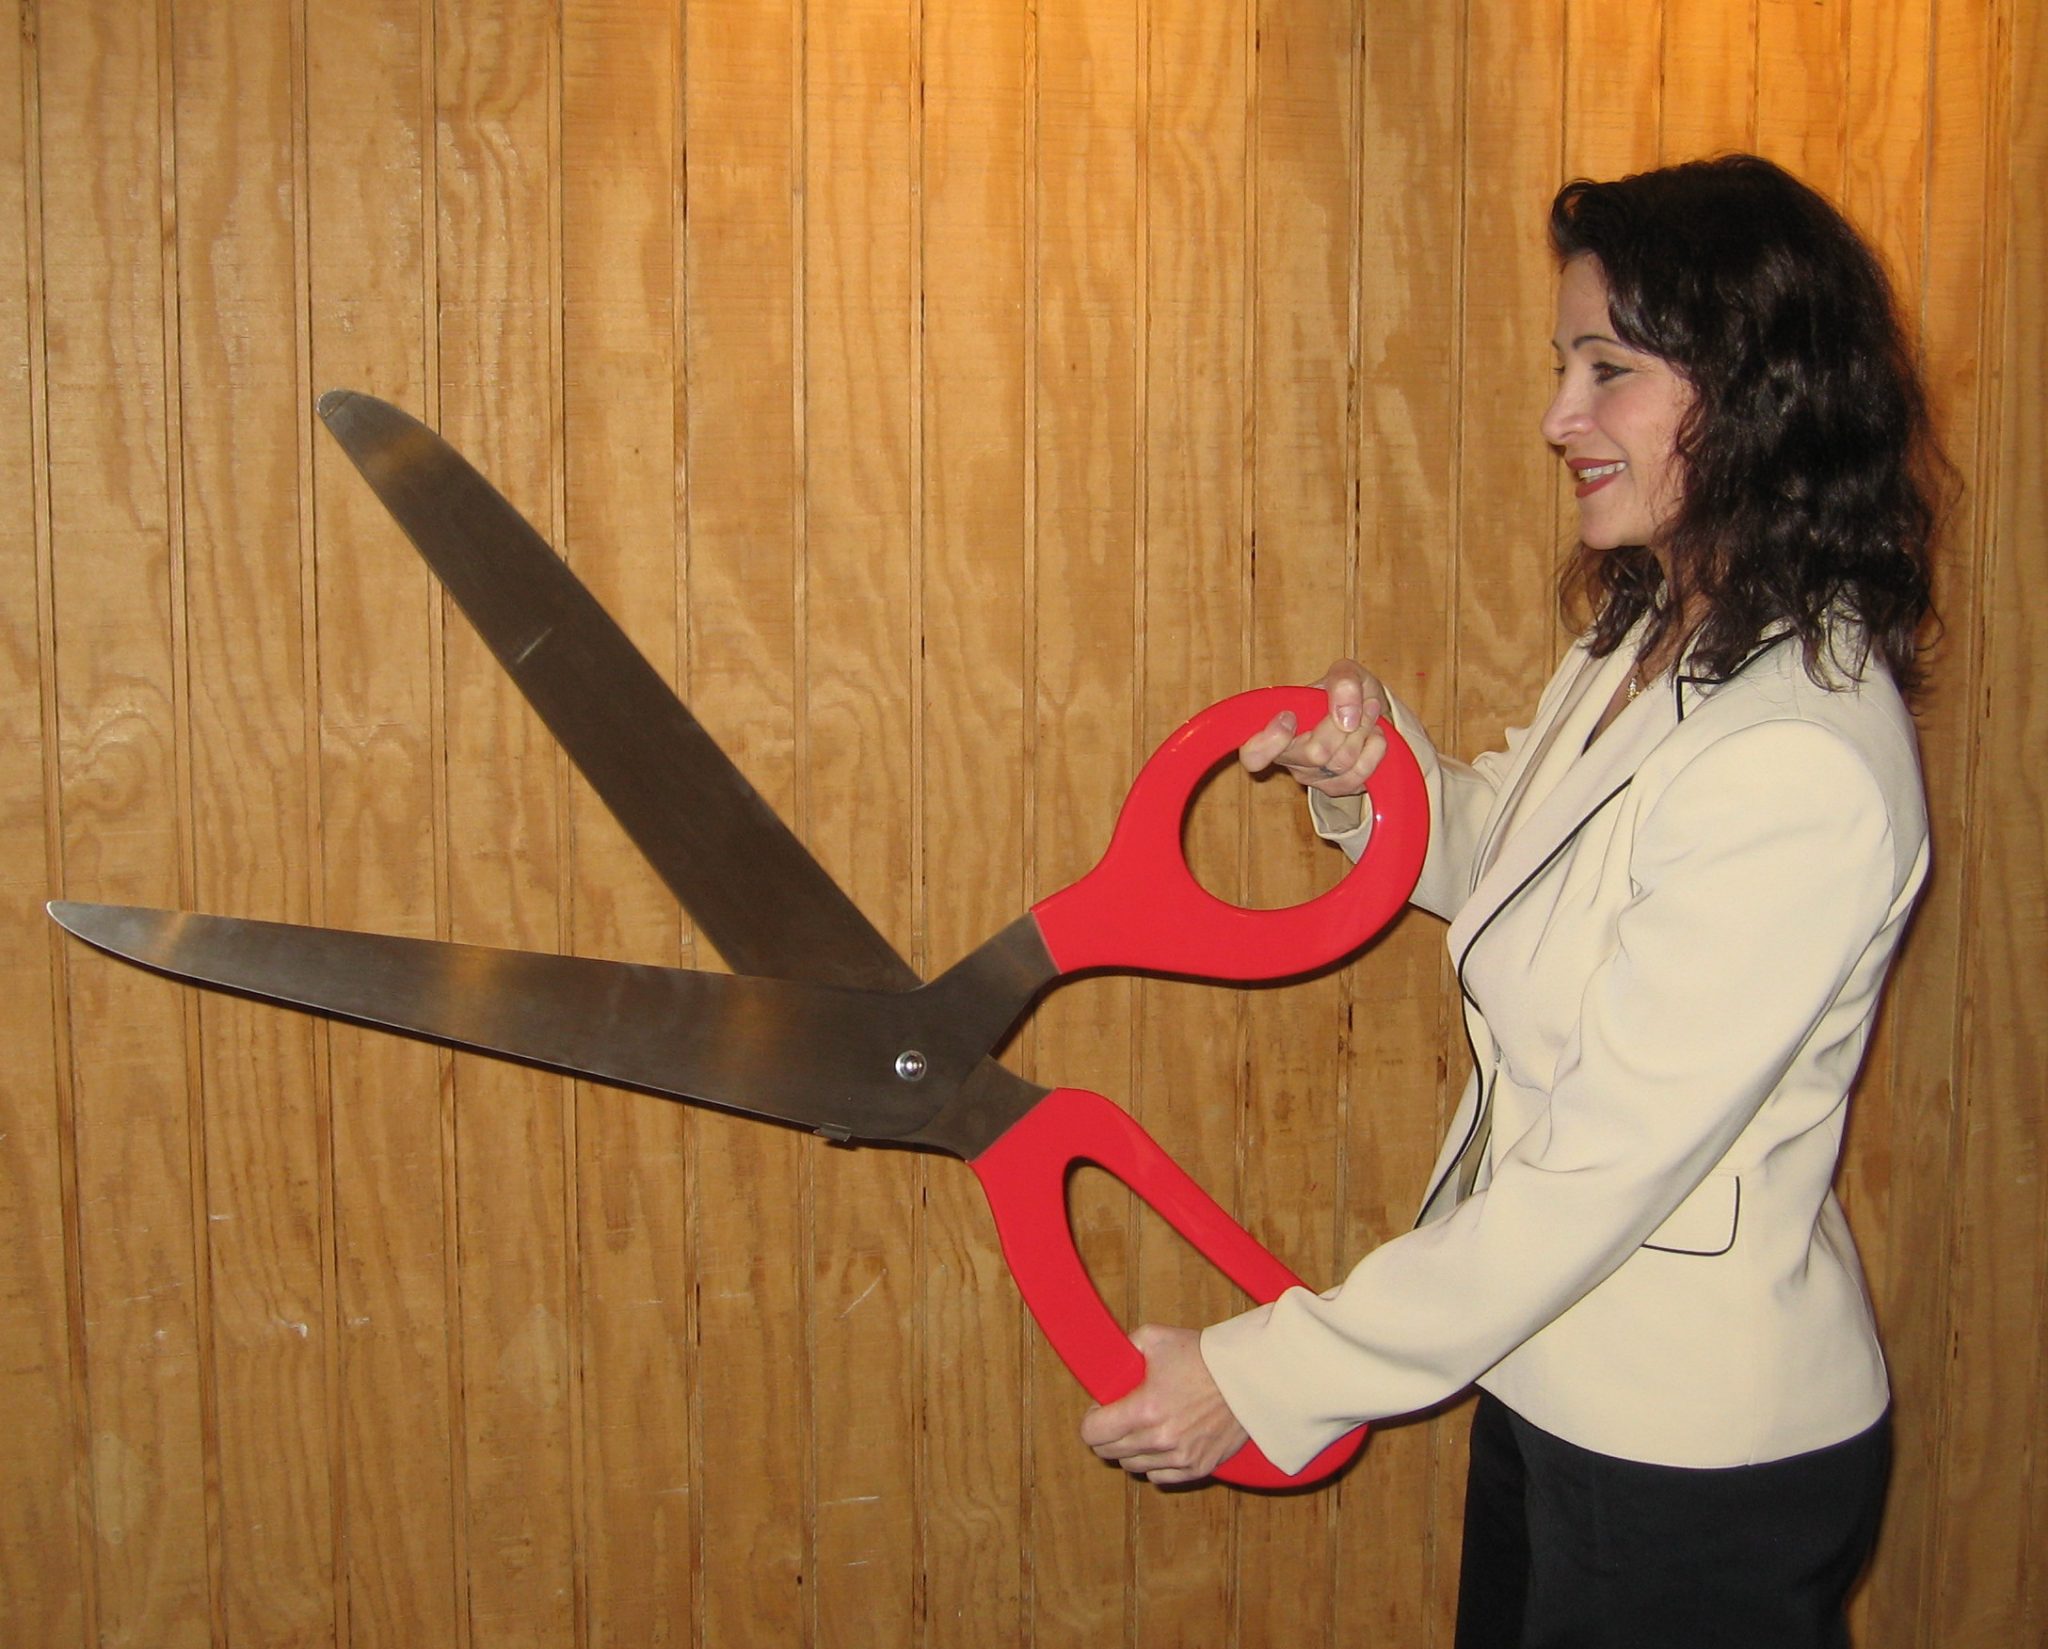 Nikko straps scissors amateur